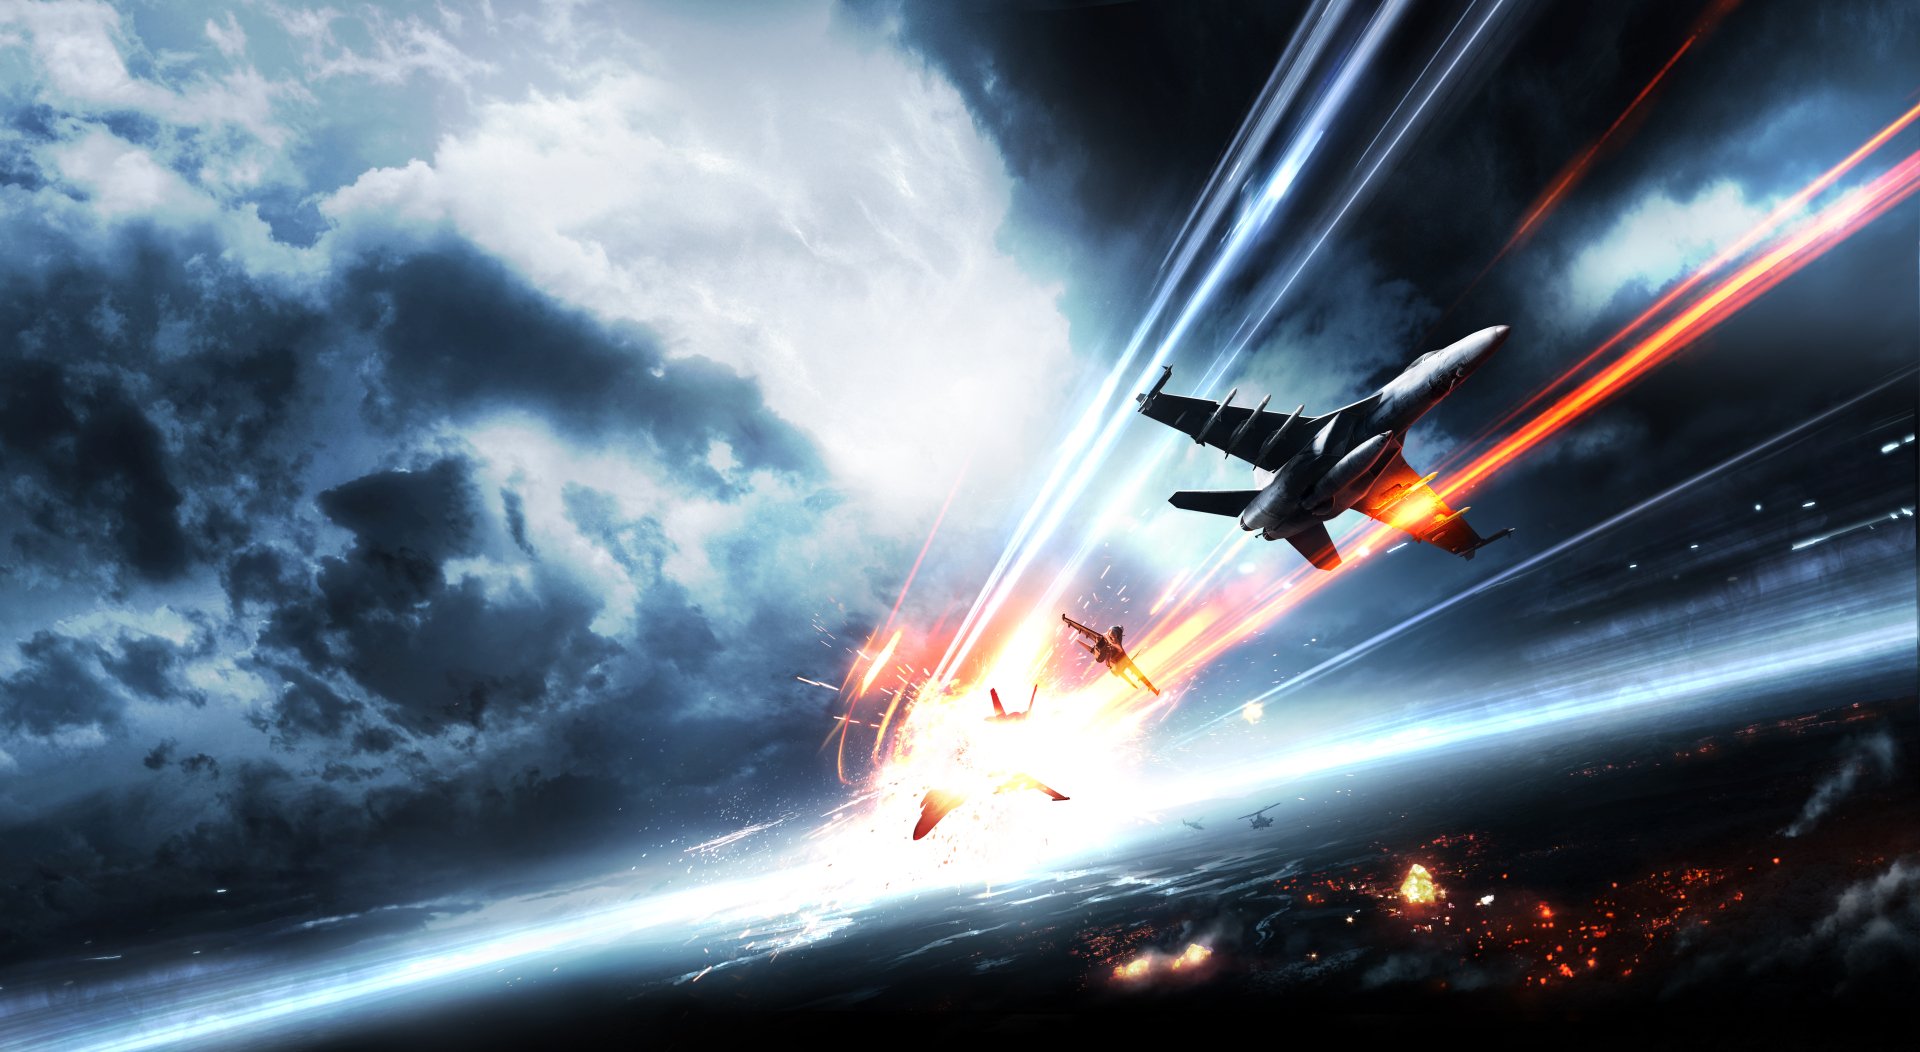 4K Battlefield 3 Fondos de pantalla | Fondos de Escritorio